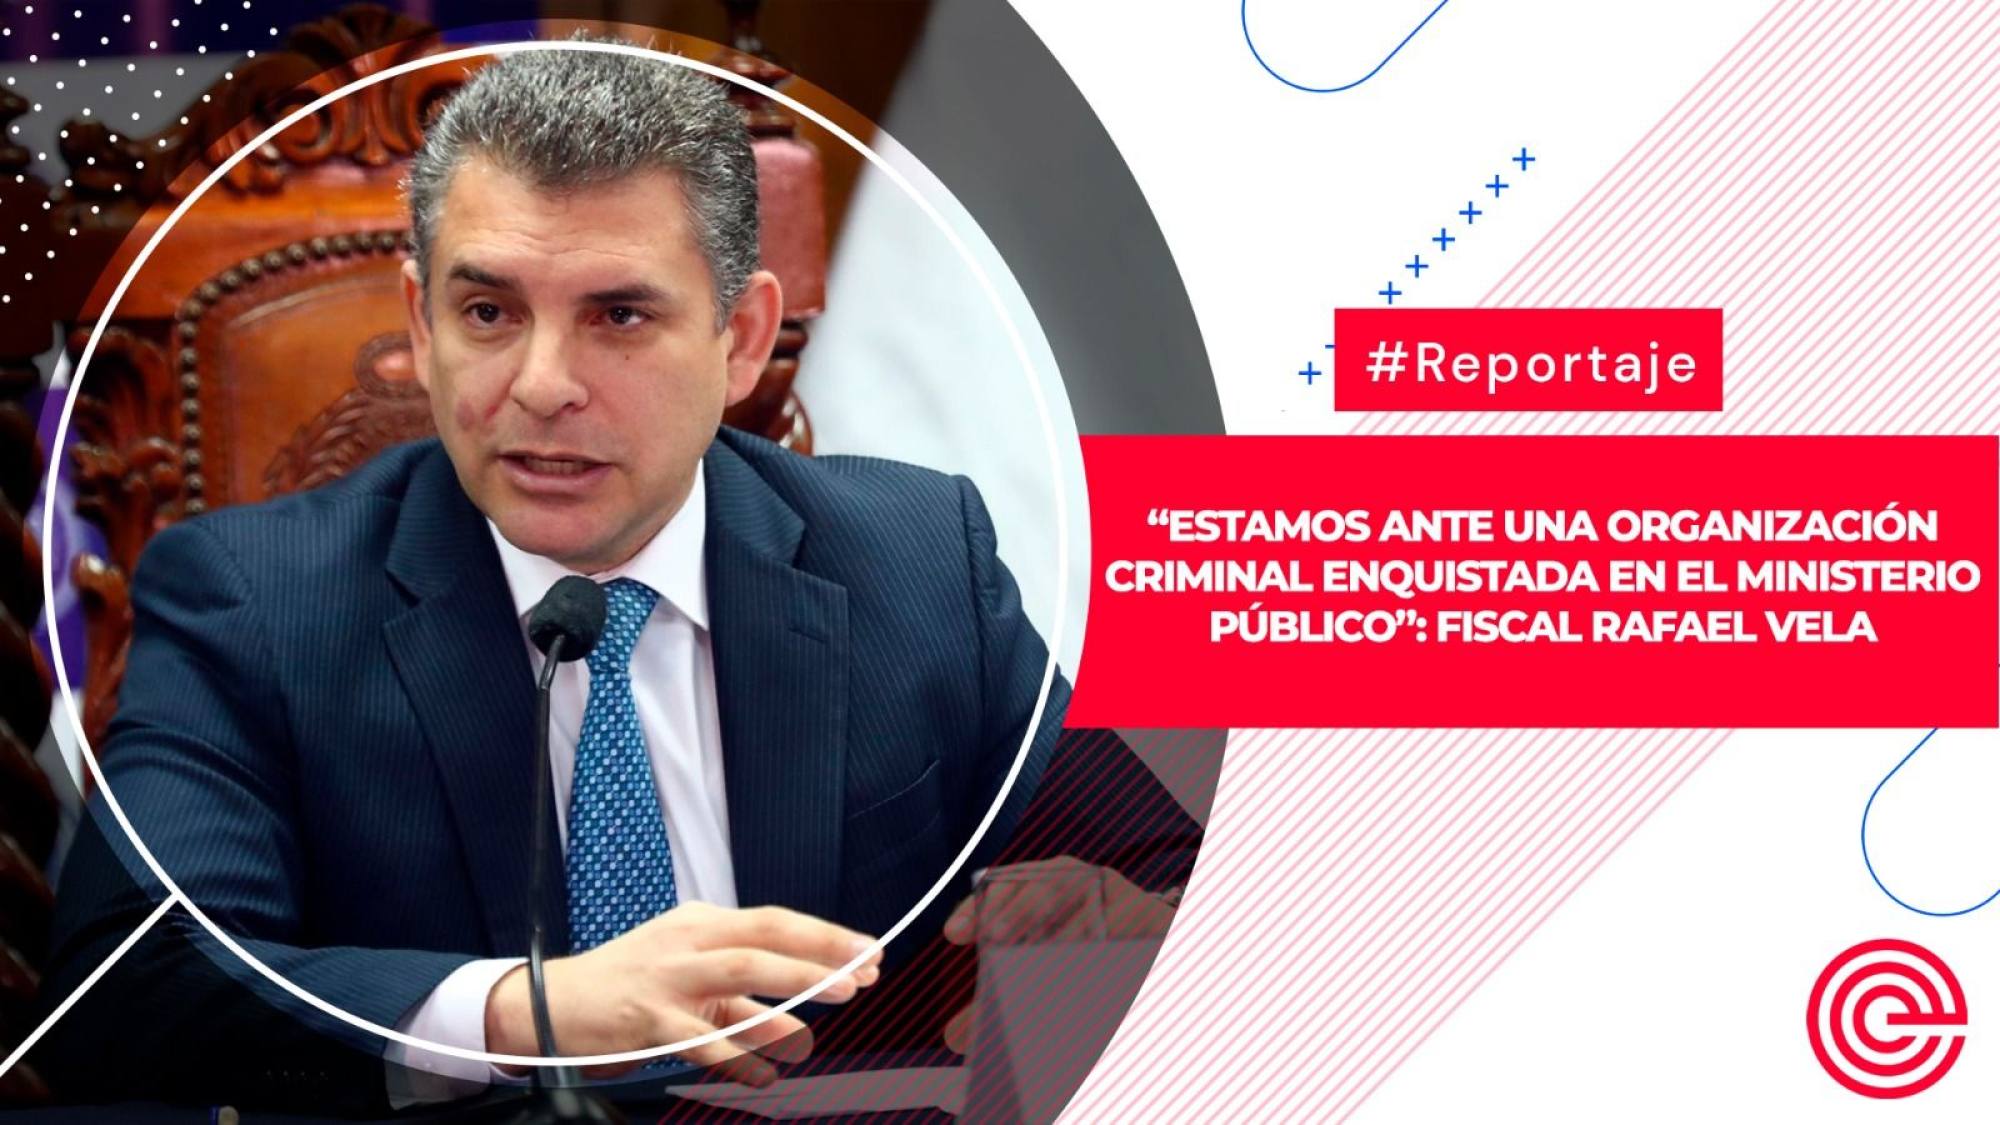 “Estamos ante una organización criminal enquistada en el Ministerio Público”: Fiscal Rafael Vela, Epicentro TV